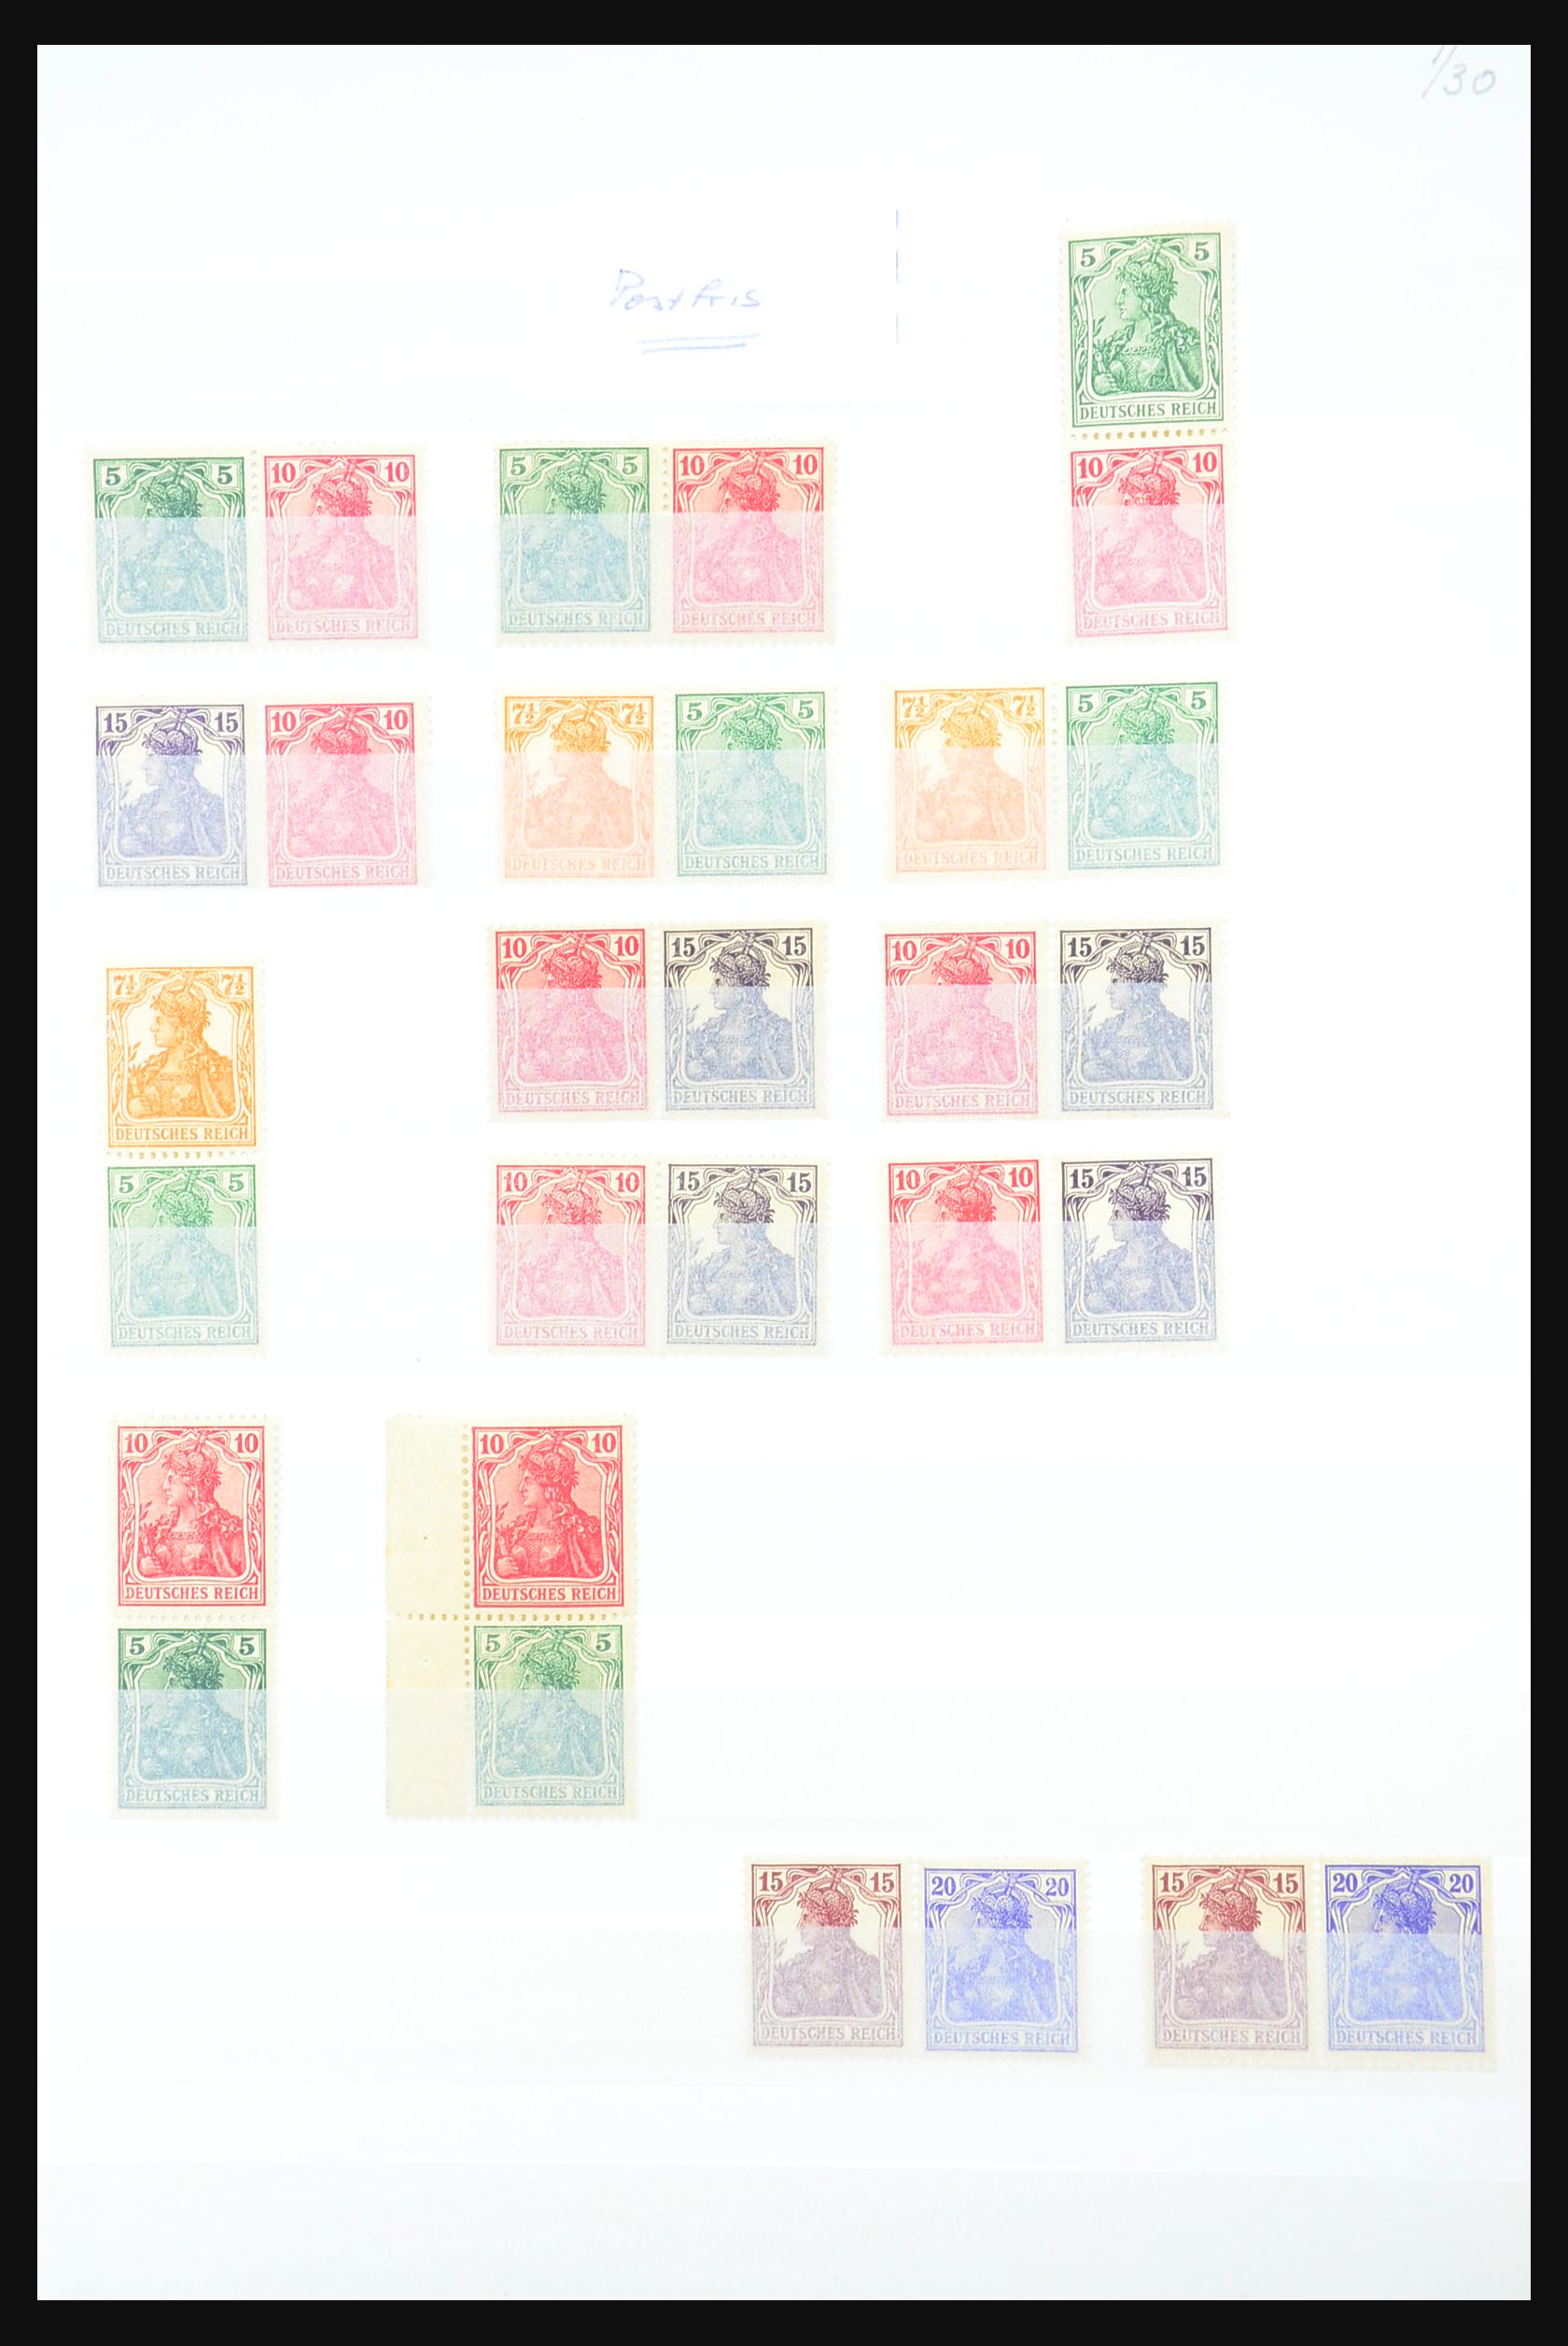 31391 001 - 31391 Duitse Rijk combinaties postfris 1913-1941.